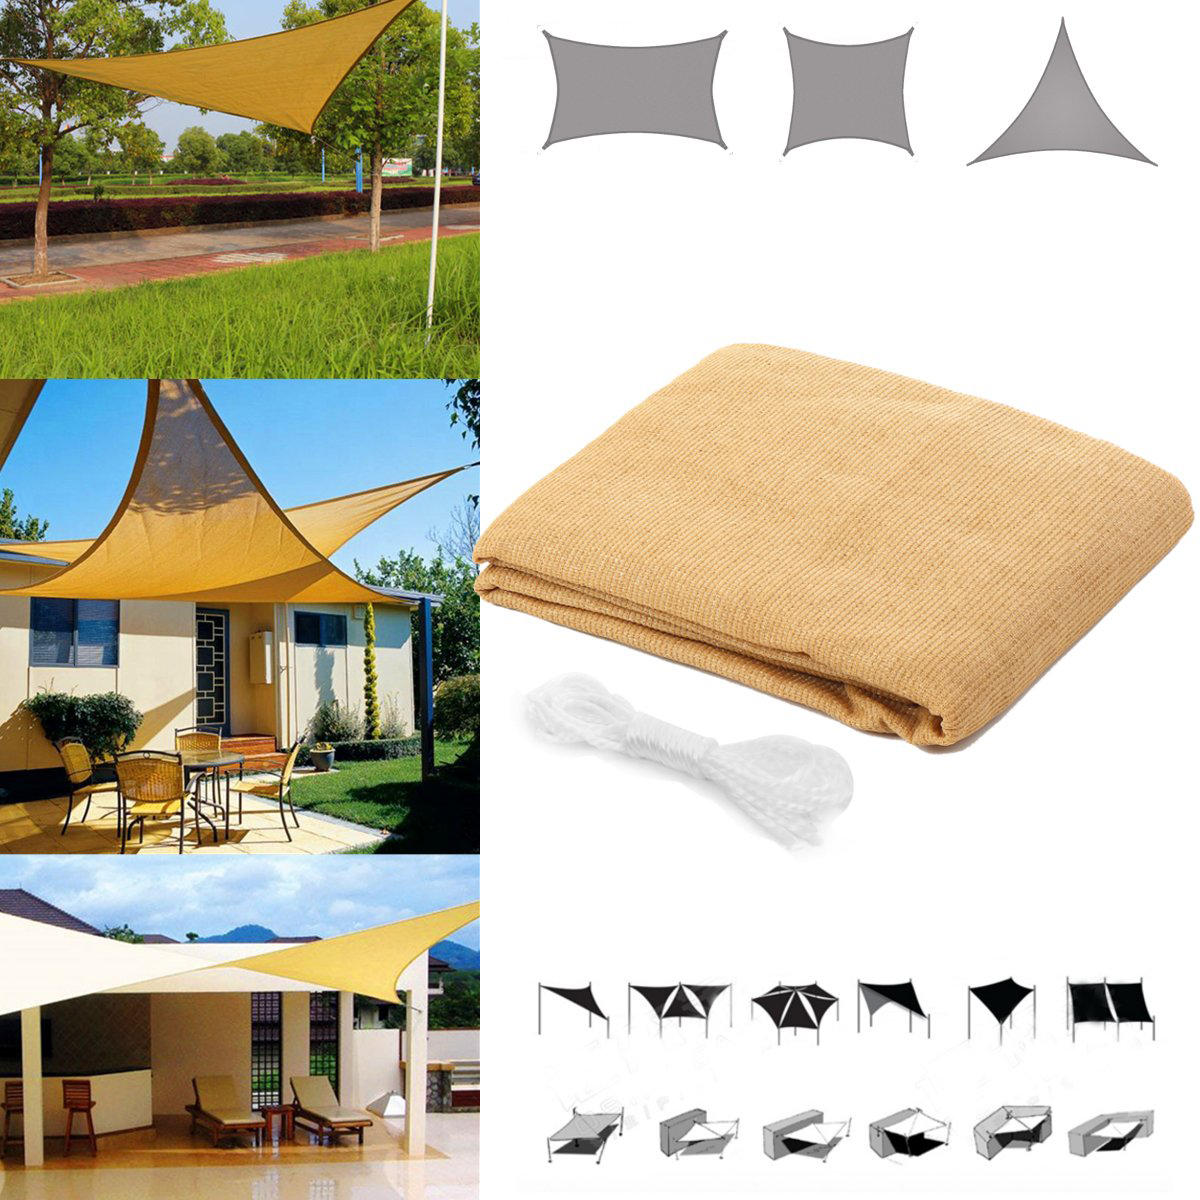 Tenda quadrangolare/triangolare per il sole, resistente all'acqua e anti-UV, con copertura per giardino, patio, campeggio all'aperto.